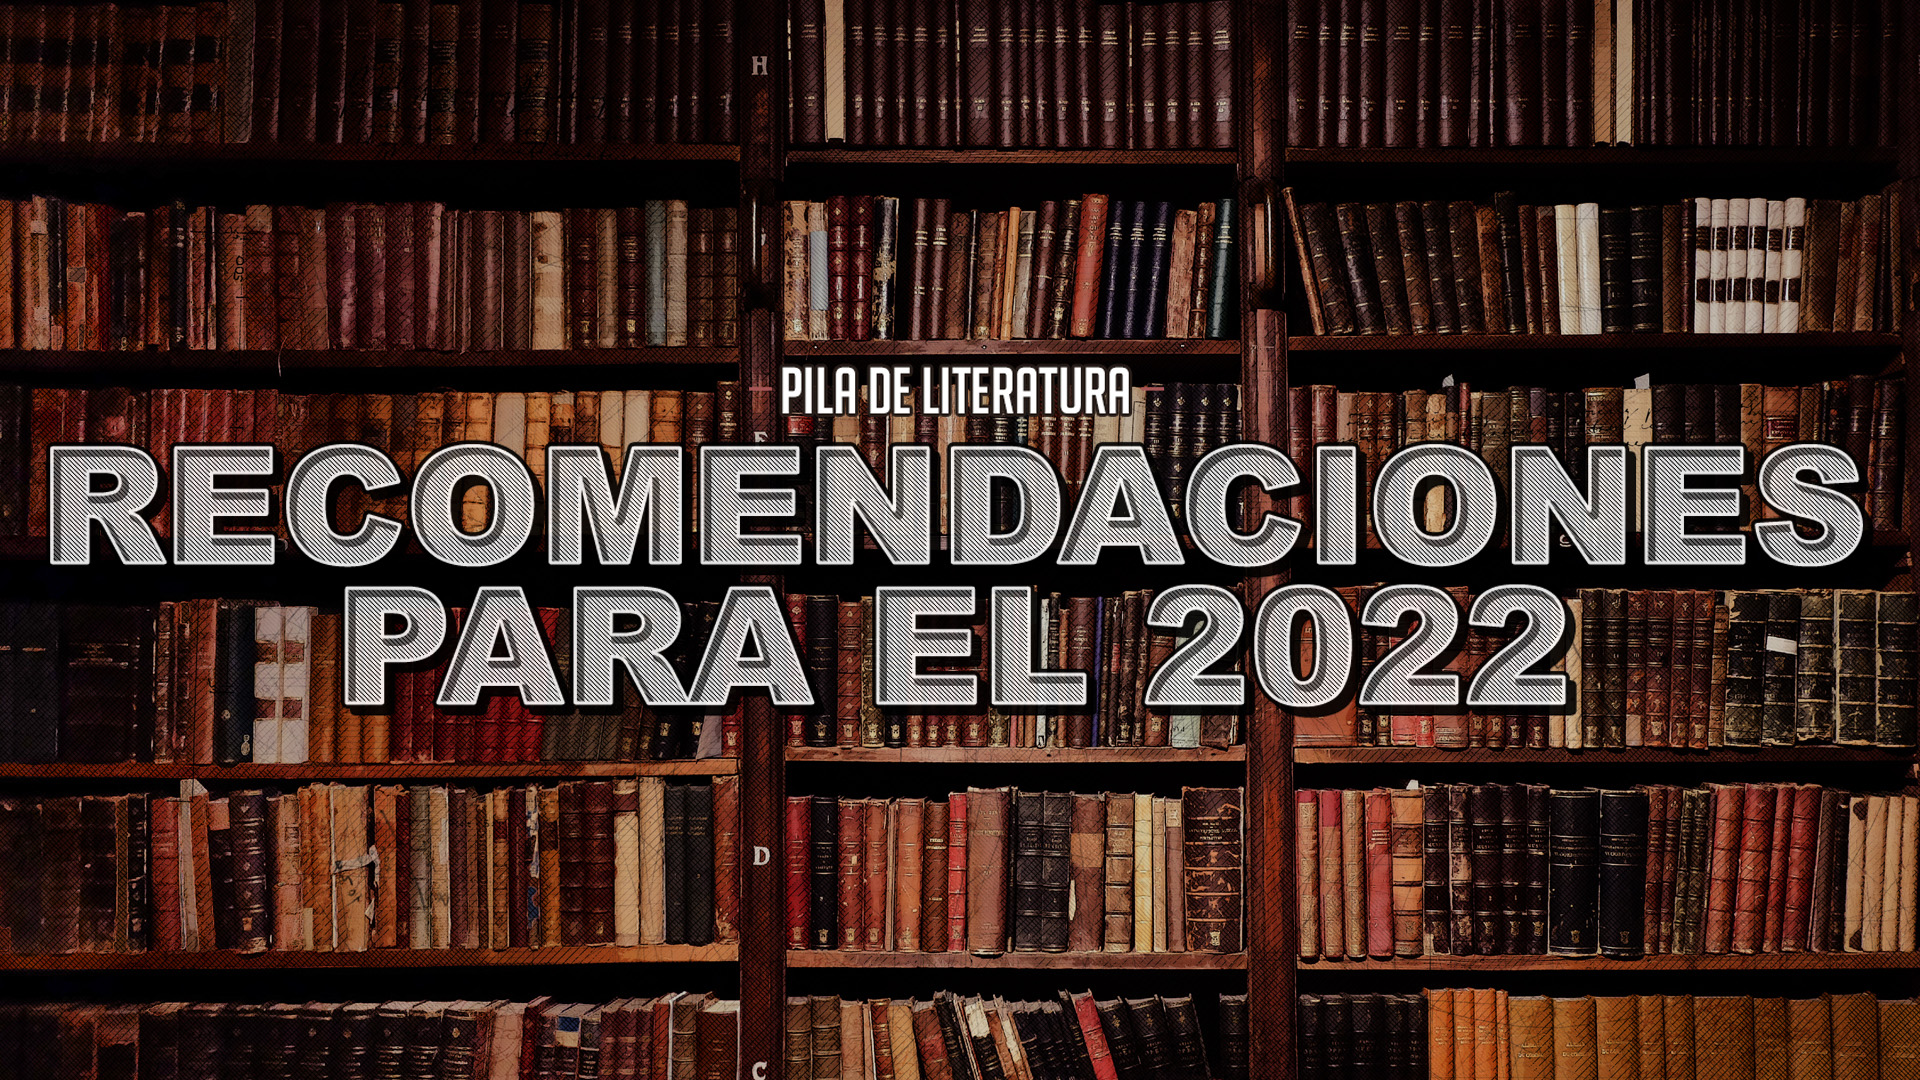 Pila de Literatura – Recomendaciones para el 2022 – 9 libros para leer a lo largo del año